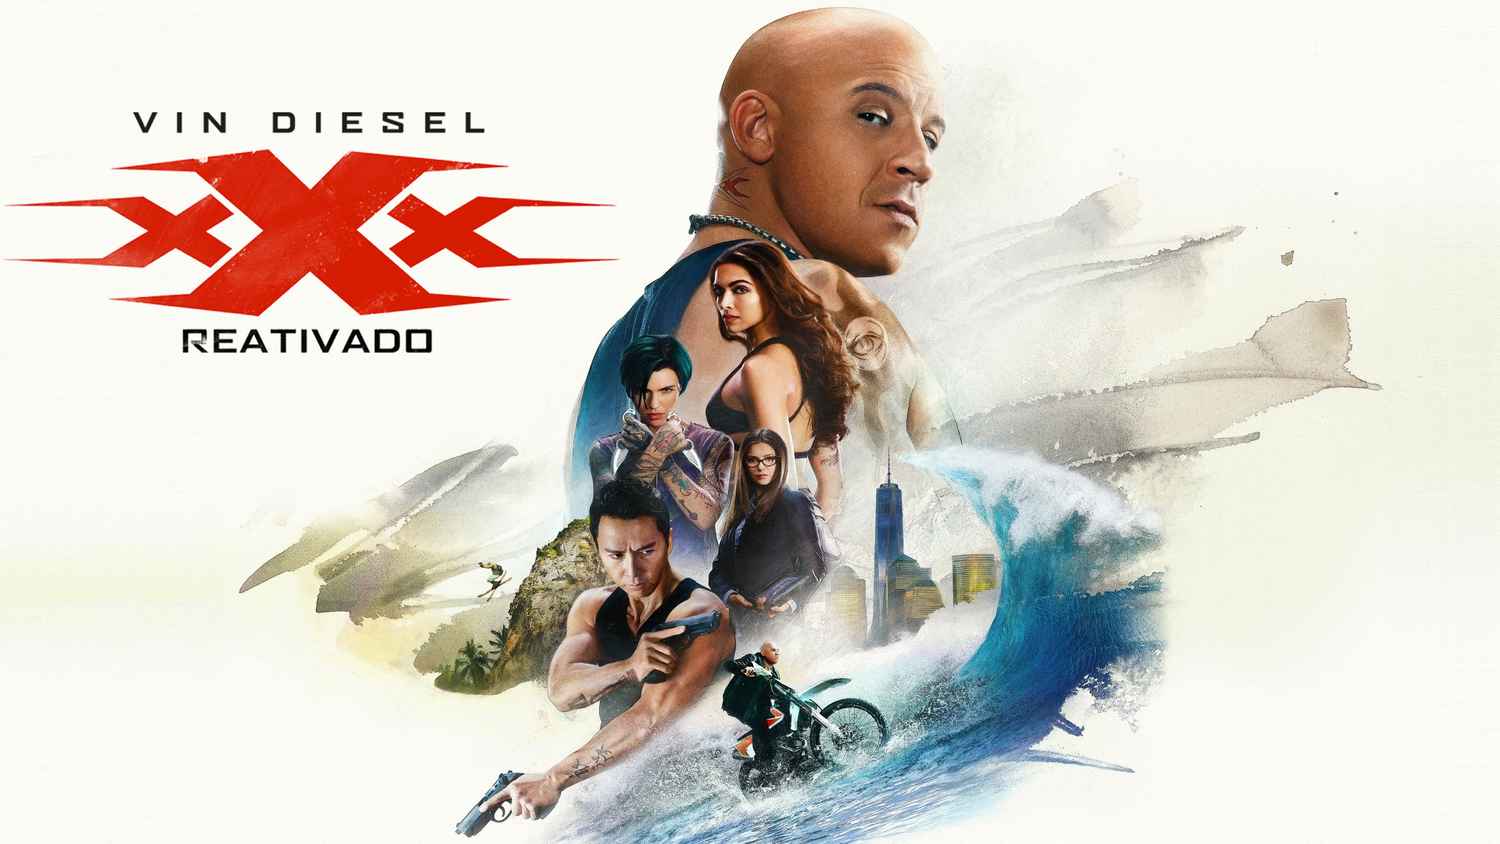 Xxx Full Movie Watch Online